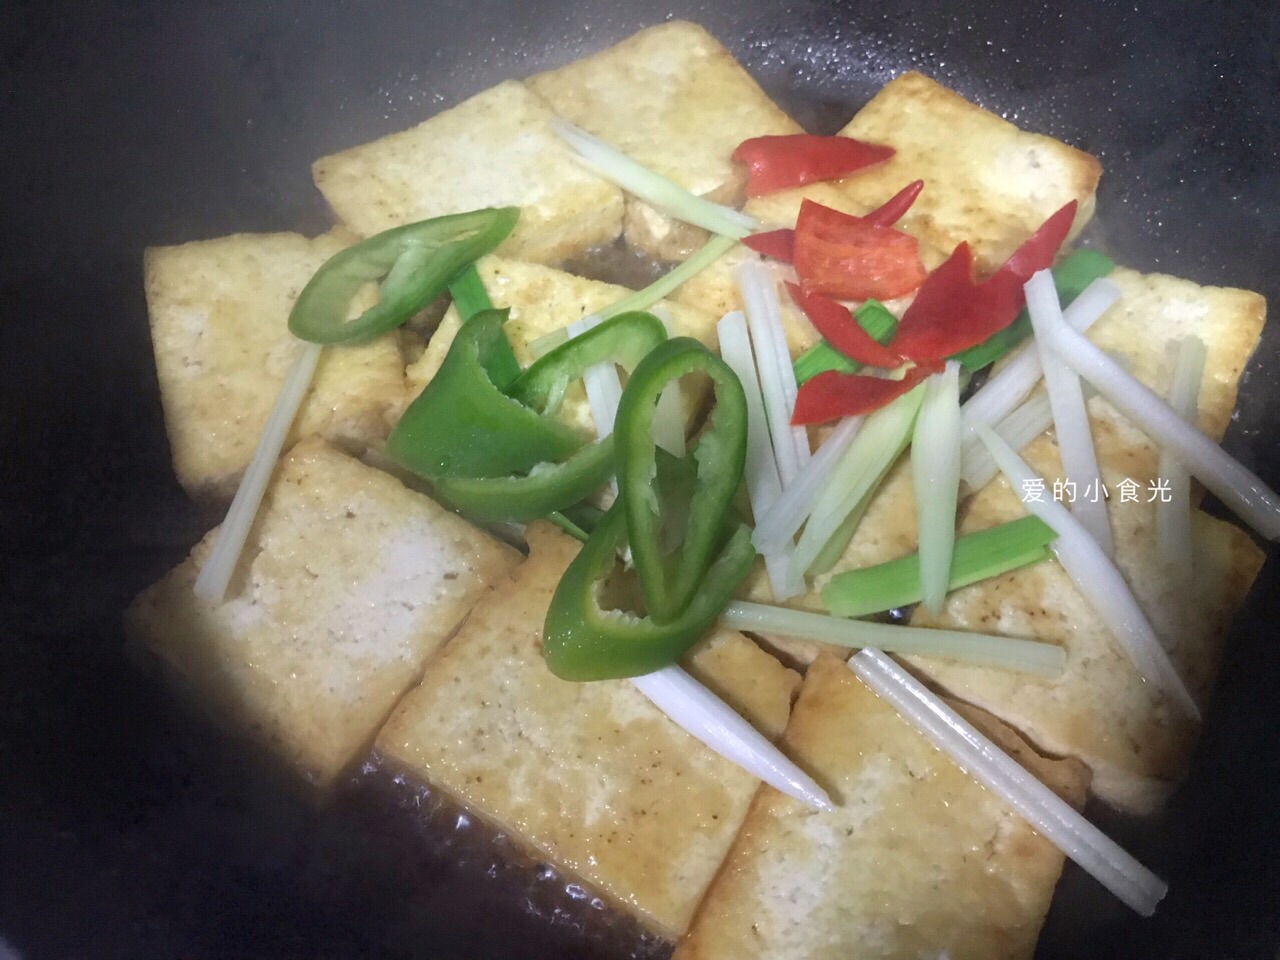 ♥我的手作料理♥ 虎皮豆腐 by Sakura的手作料理 - 愛料理